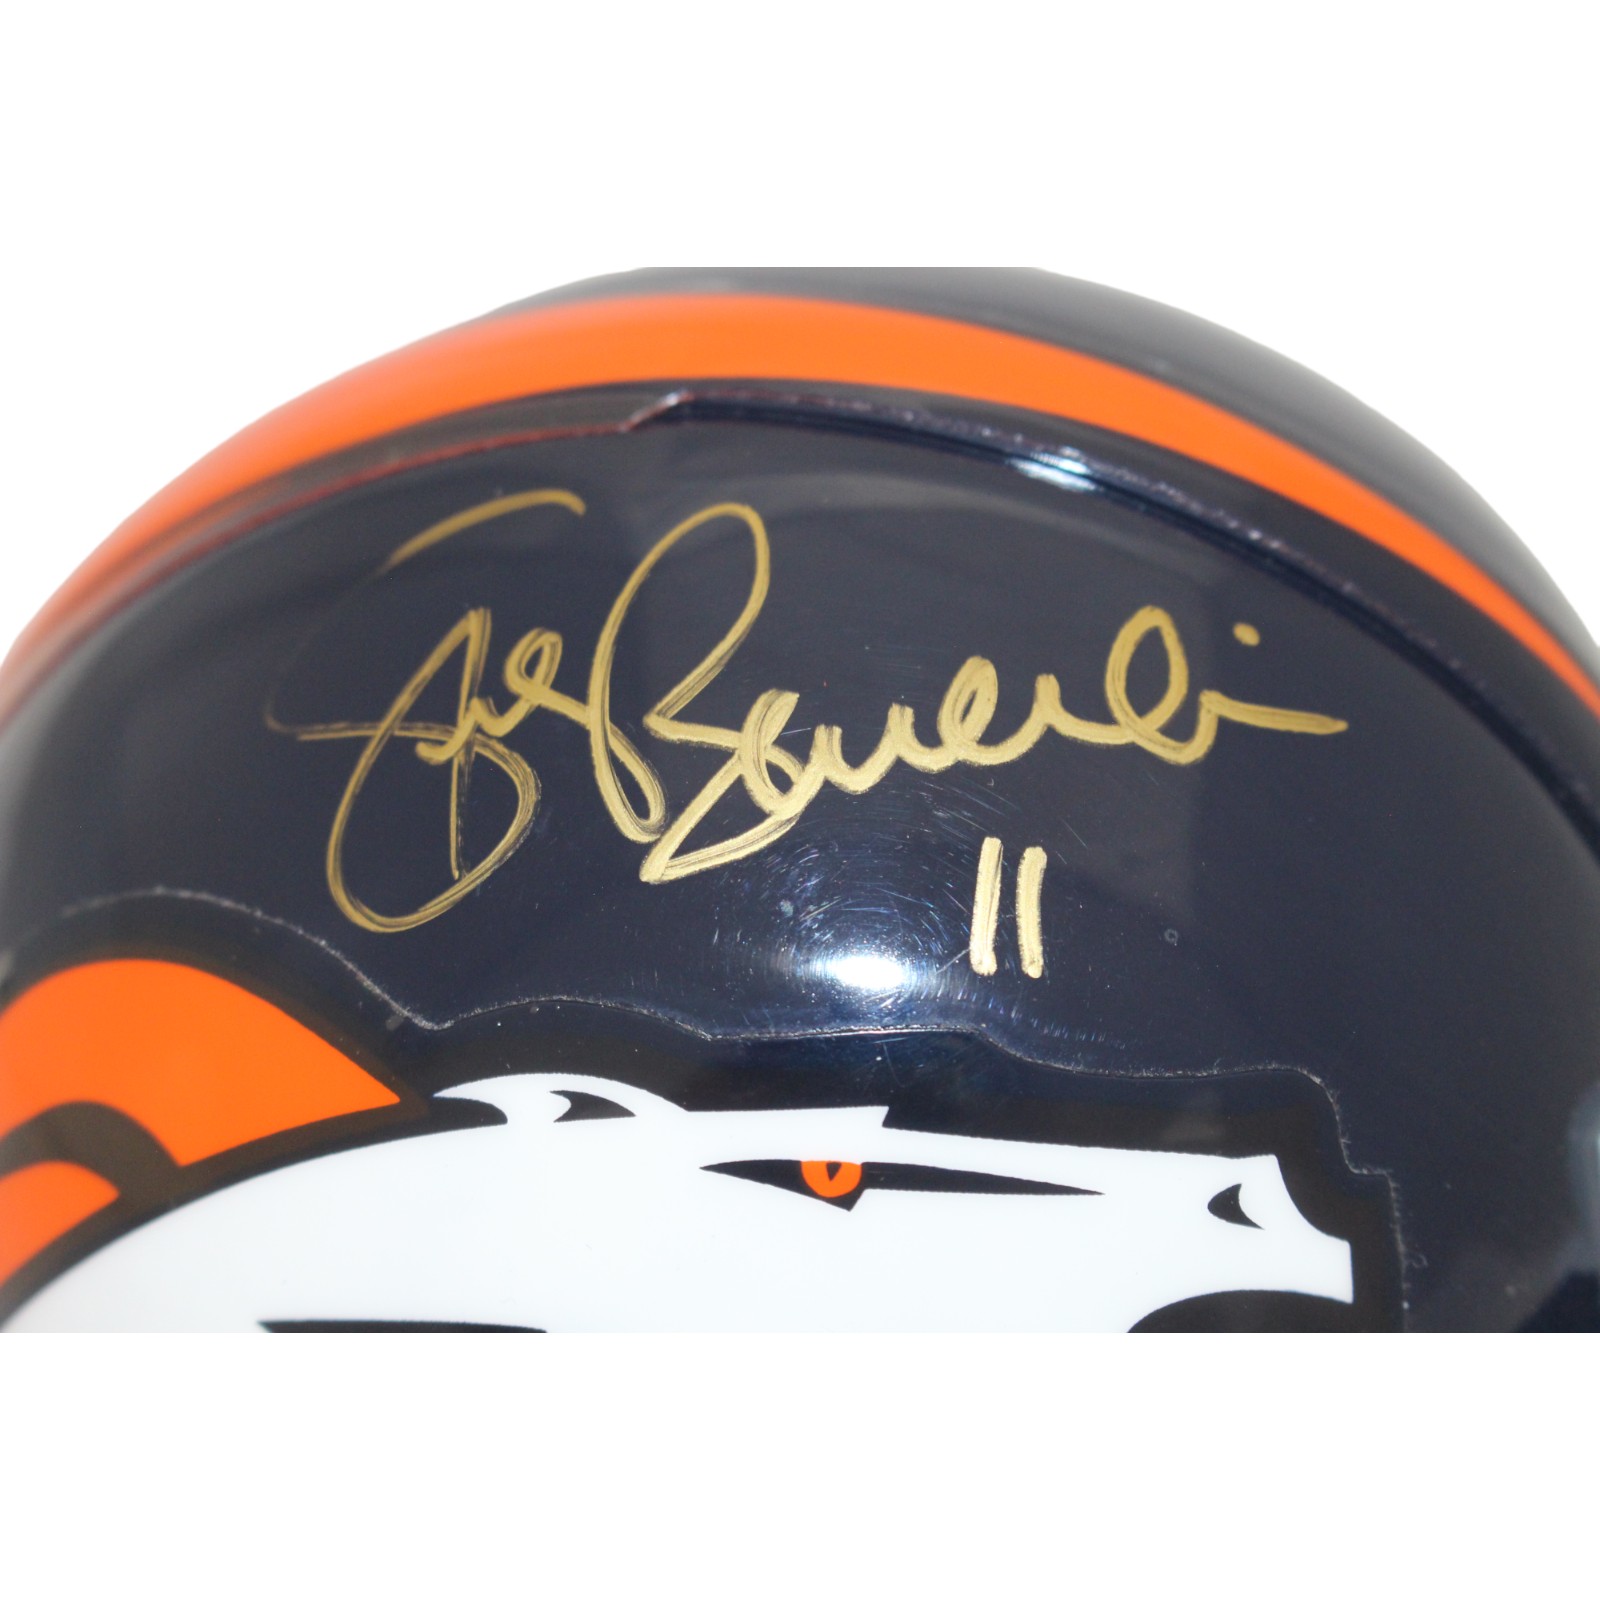 Steve Beuerlein Signed Denver Broncos VSR4 Authentic Mini Helmet BAS 44130